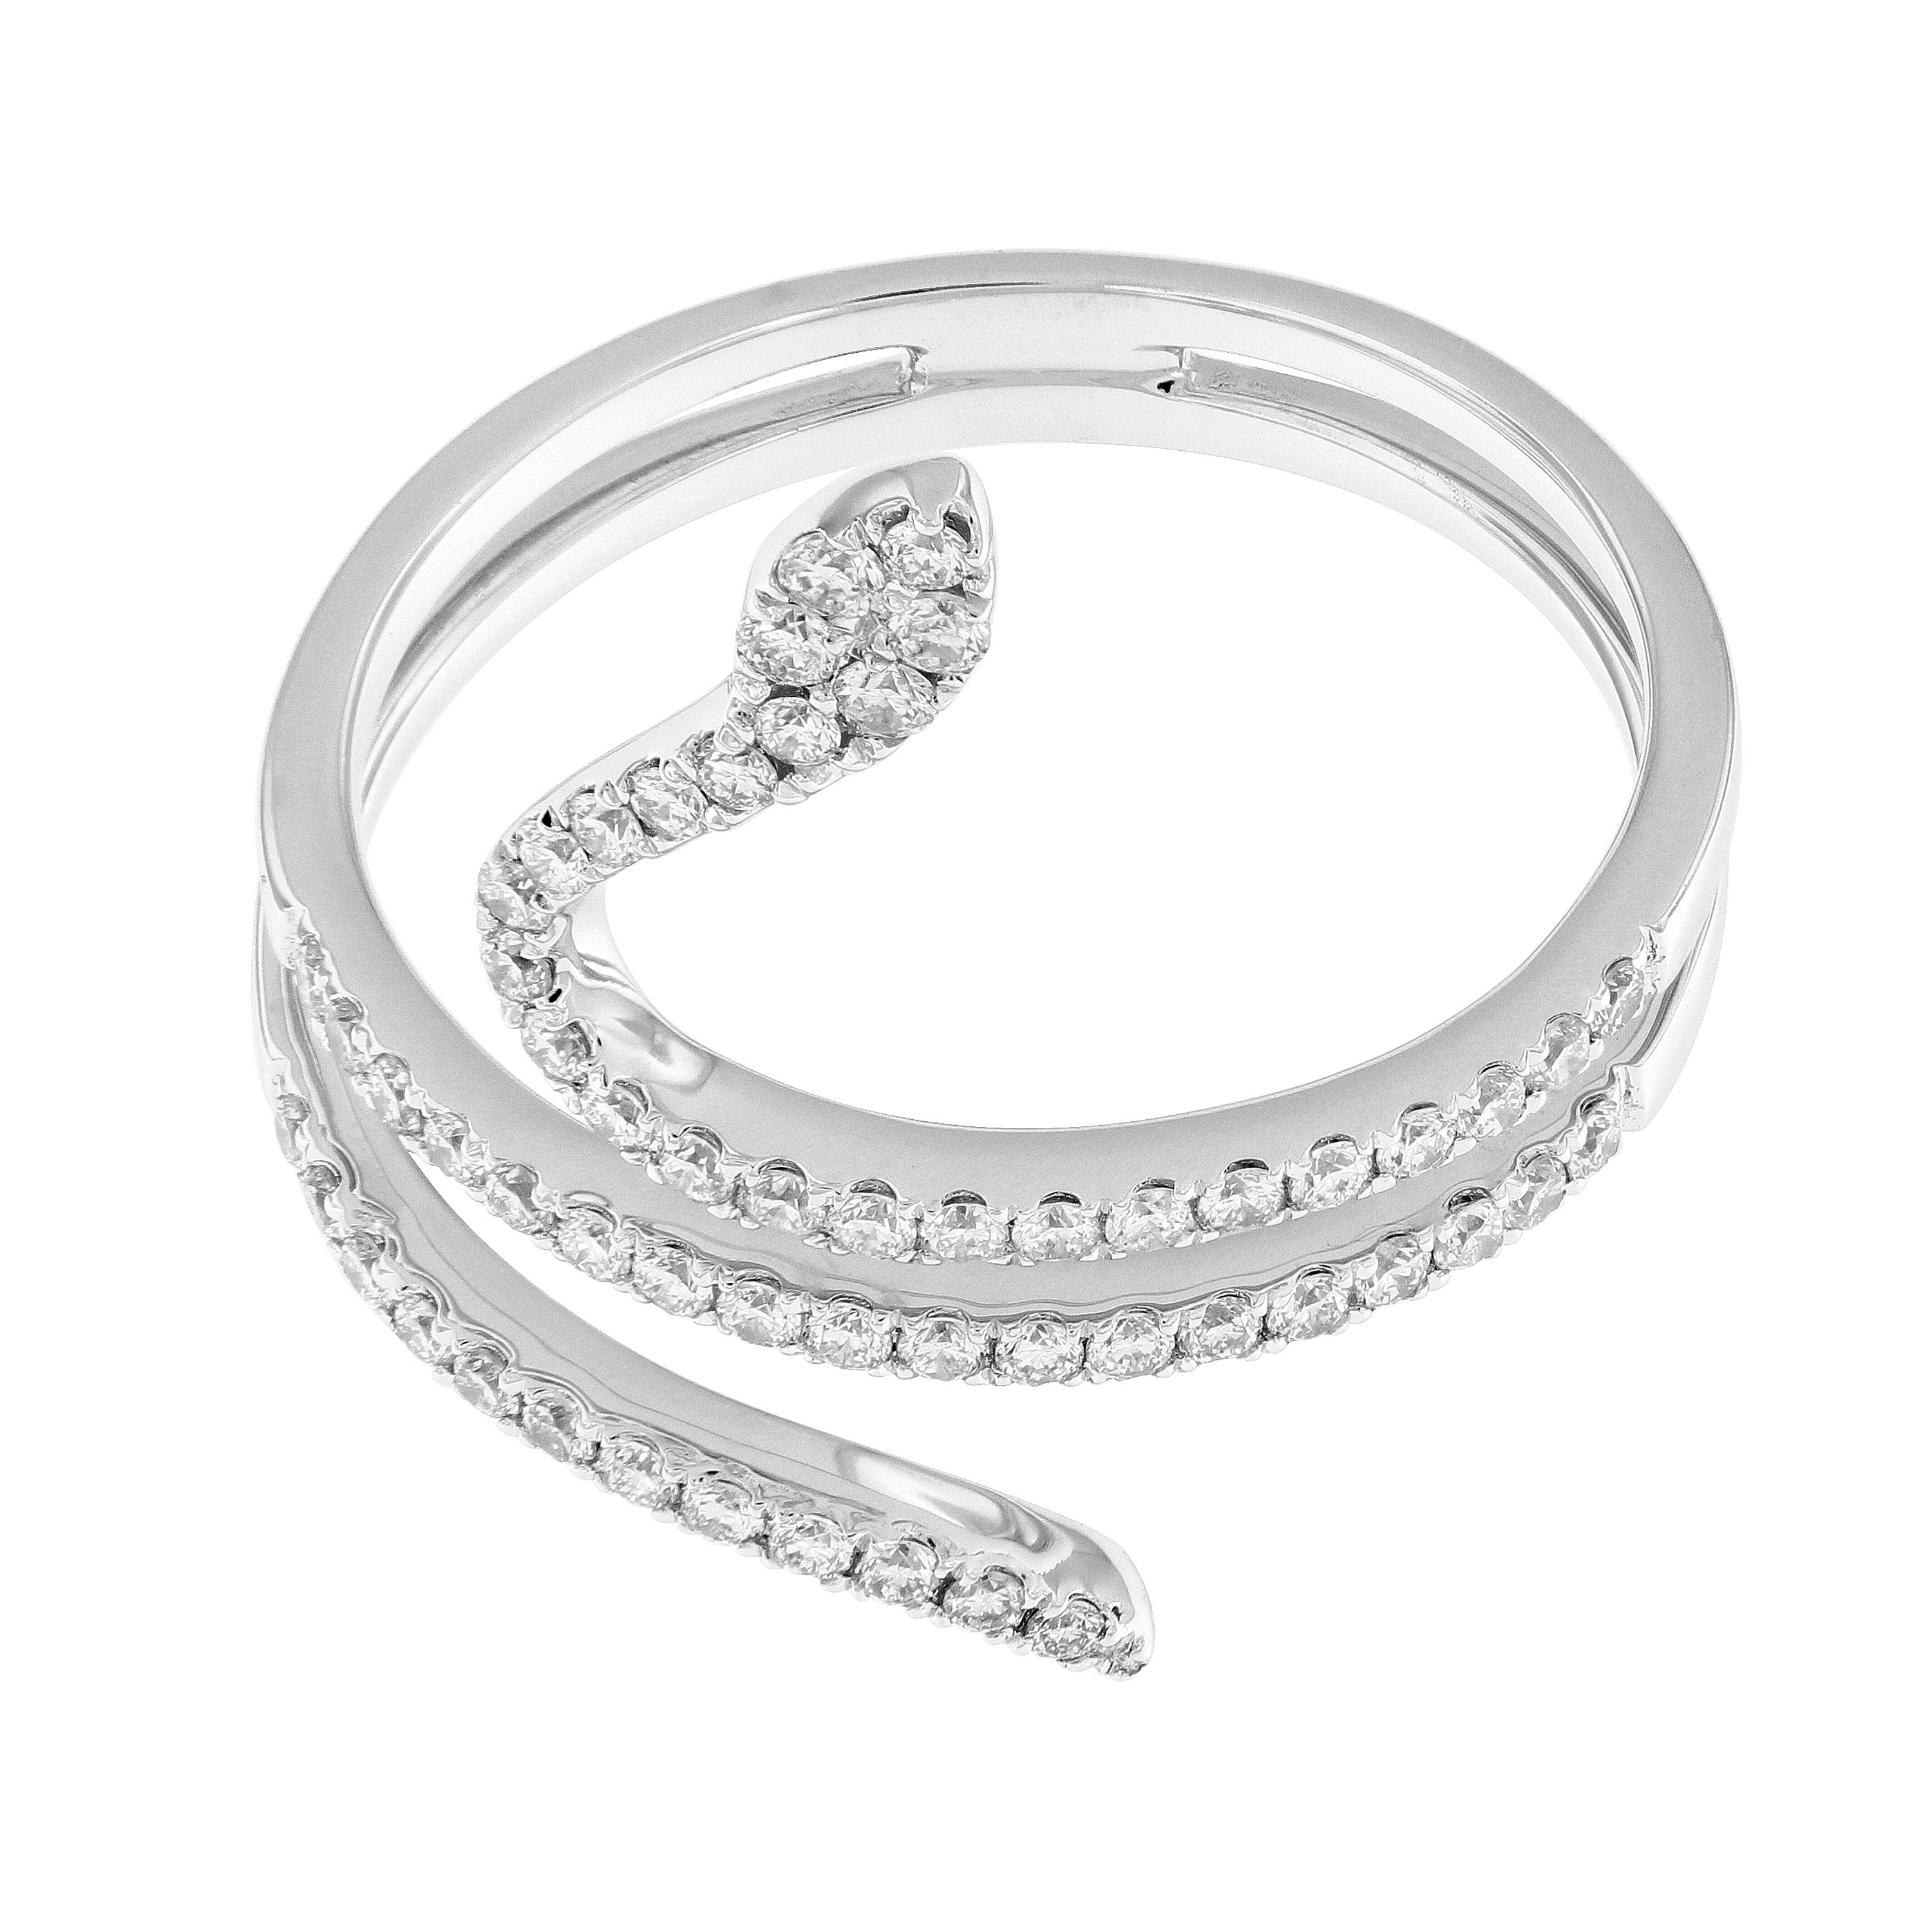 Cette bague serpent contemporaine s'enroule joliment autour de votre doigt et est réalisée en or blanc fin 18 carats. Avec 56 diamants ronds de taille brillant = 0,39 Cttw. La bague est une taille 6.5 mais peut être ajustée. 

Diamants 0,39 cttw,